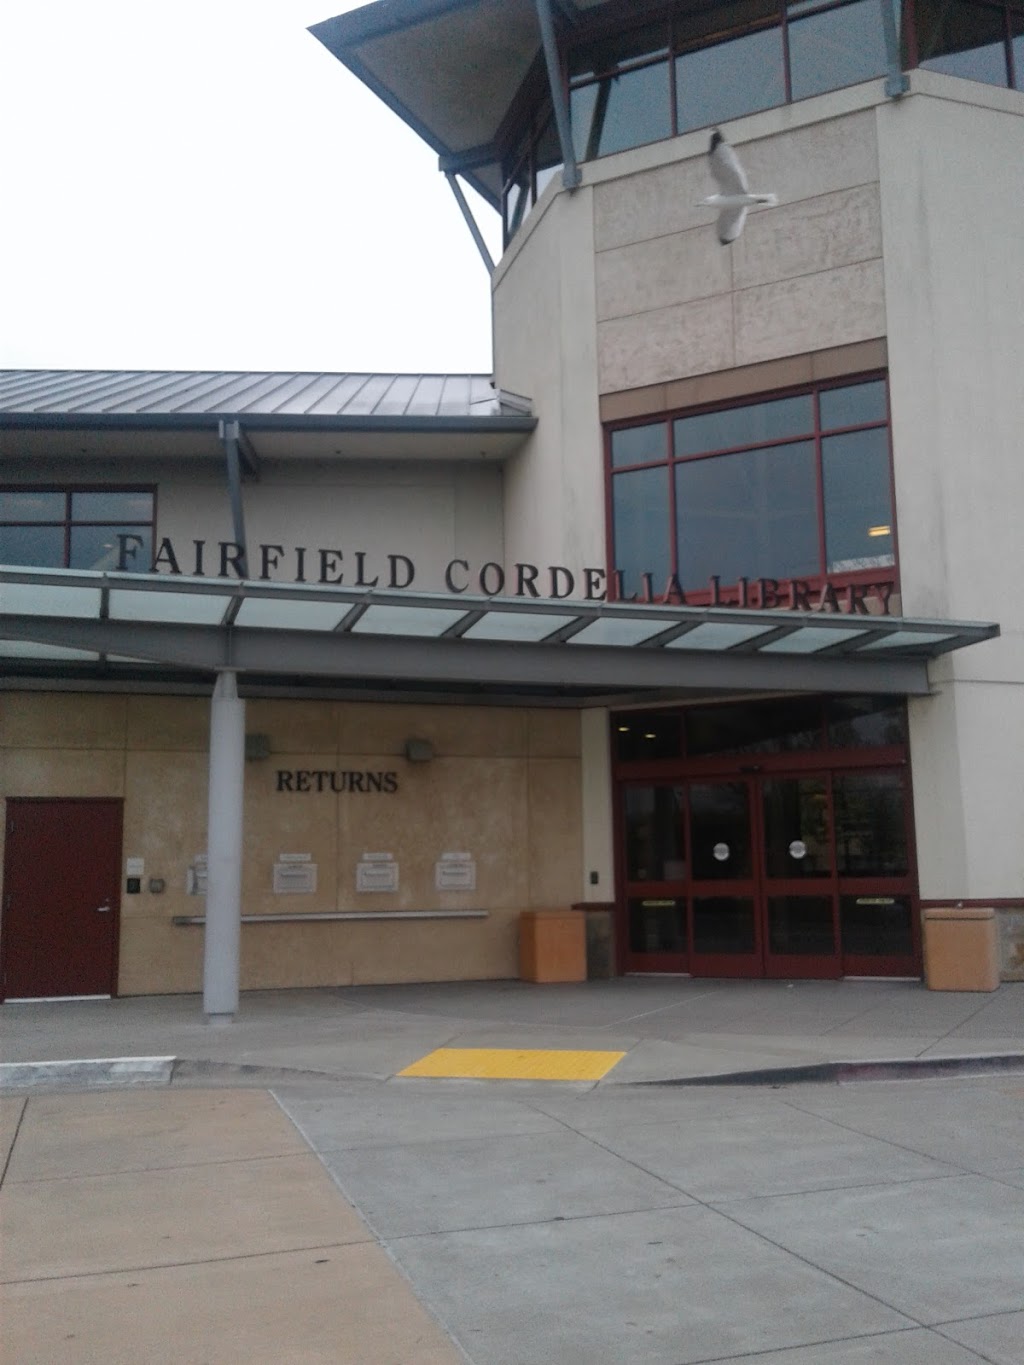 Fairfield Cordelia Library | 5050 Business Center Dr, Fairfield, CA 94534 | Phone: (866) 572-7587